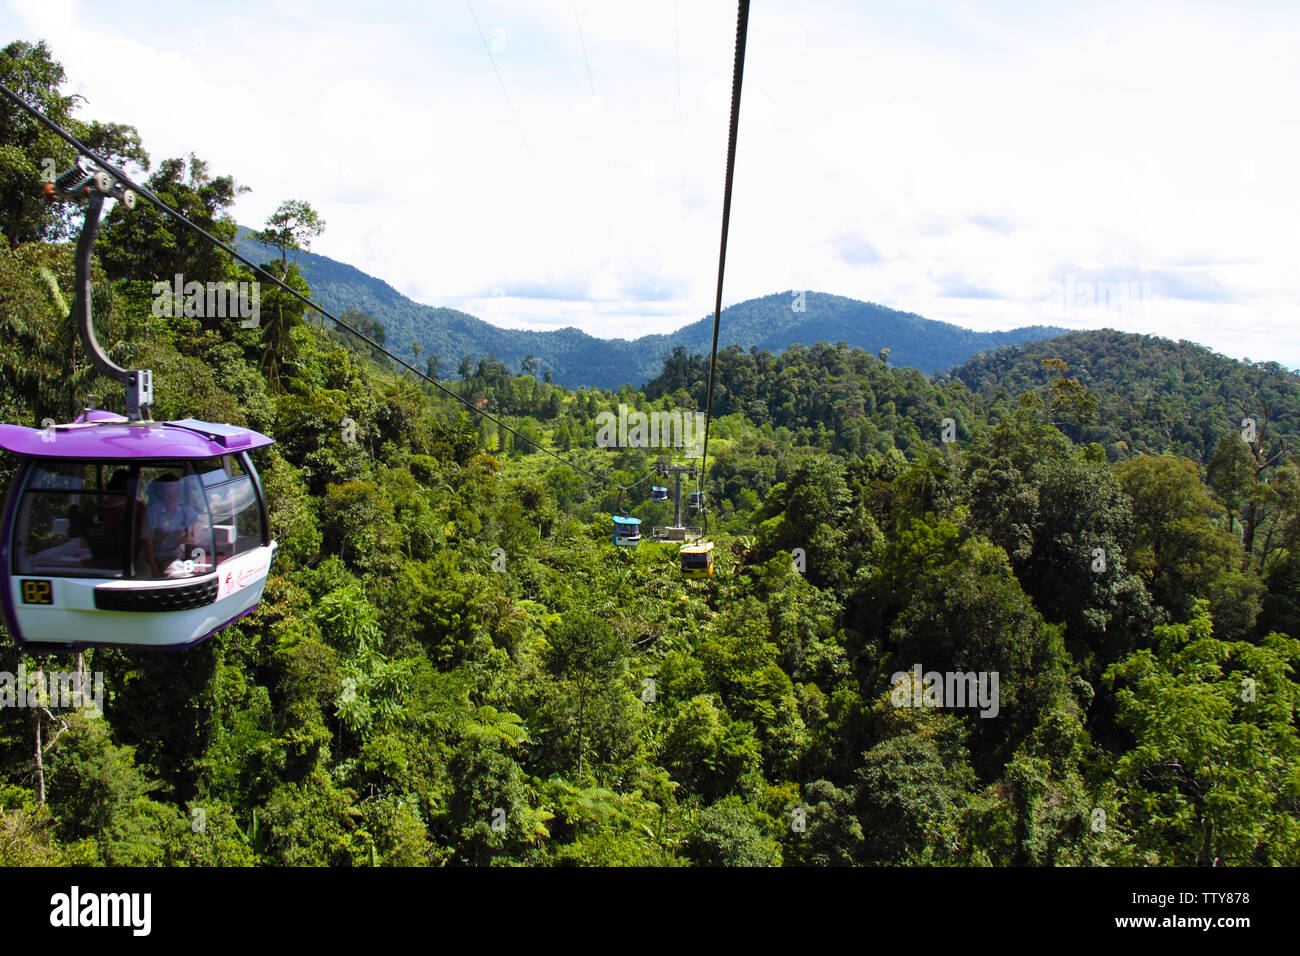 Vue en grand angle du téléphérique, Genting Highlands, Malaisie Banque D'Images